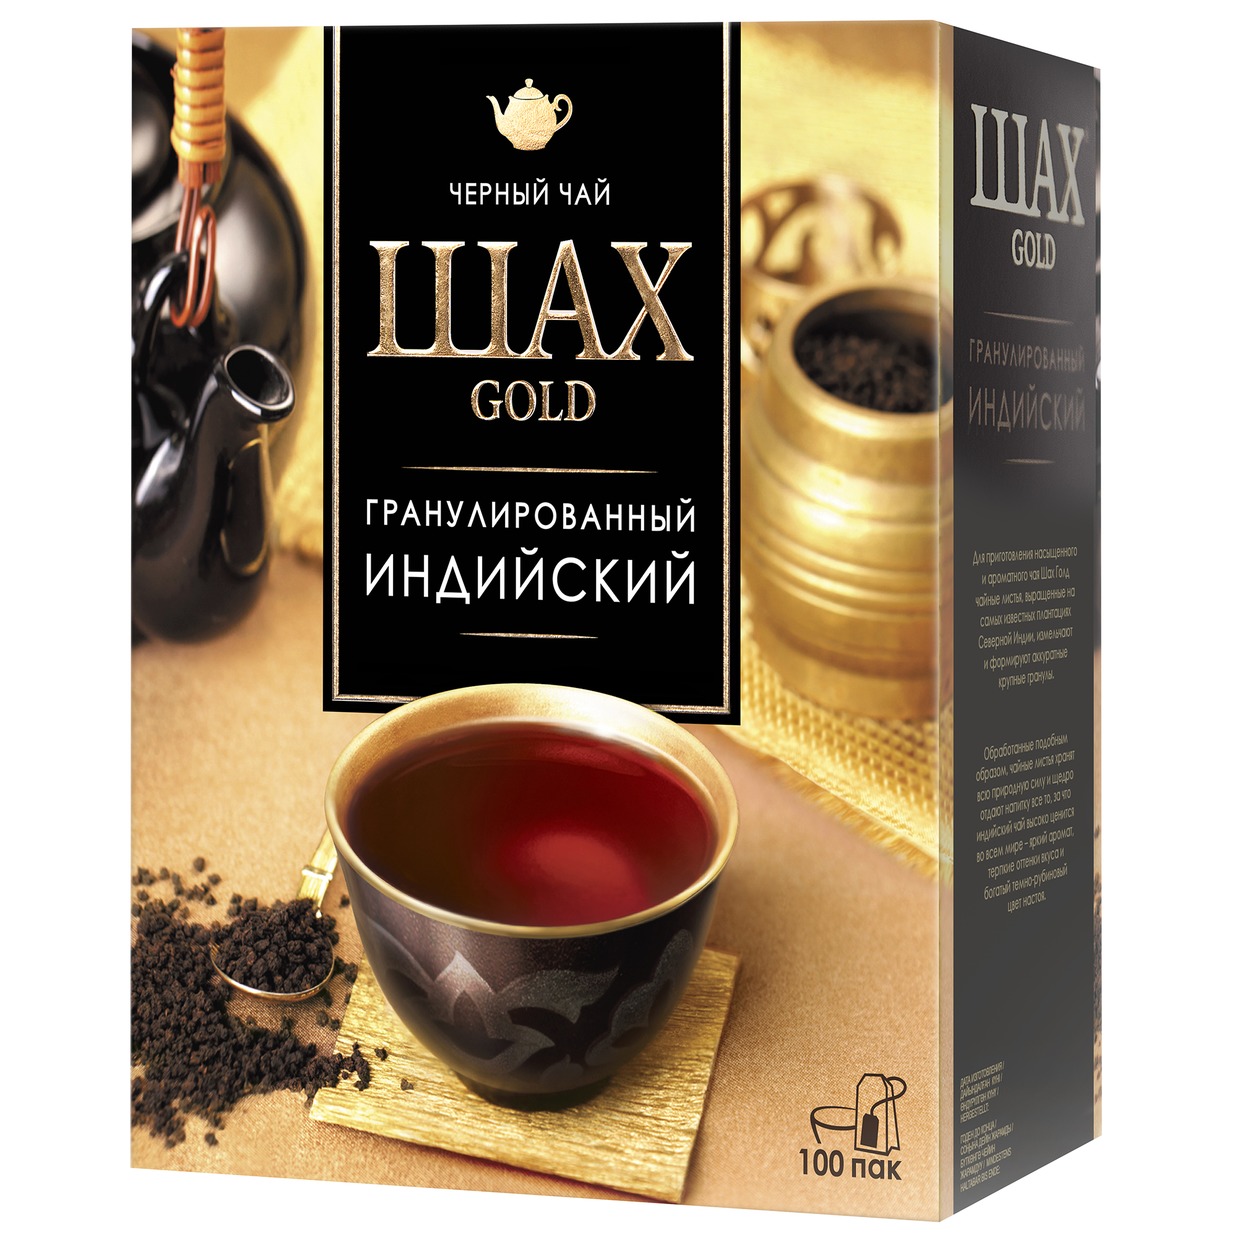 Чай Шах Голд индийский черный гранулированный в пакетиках 200 г